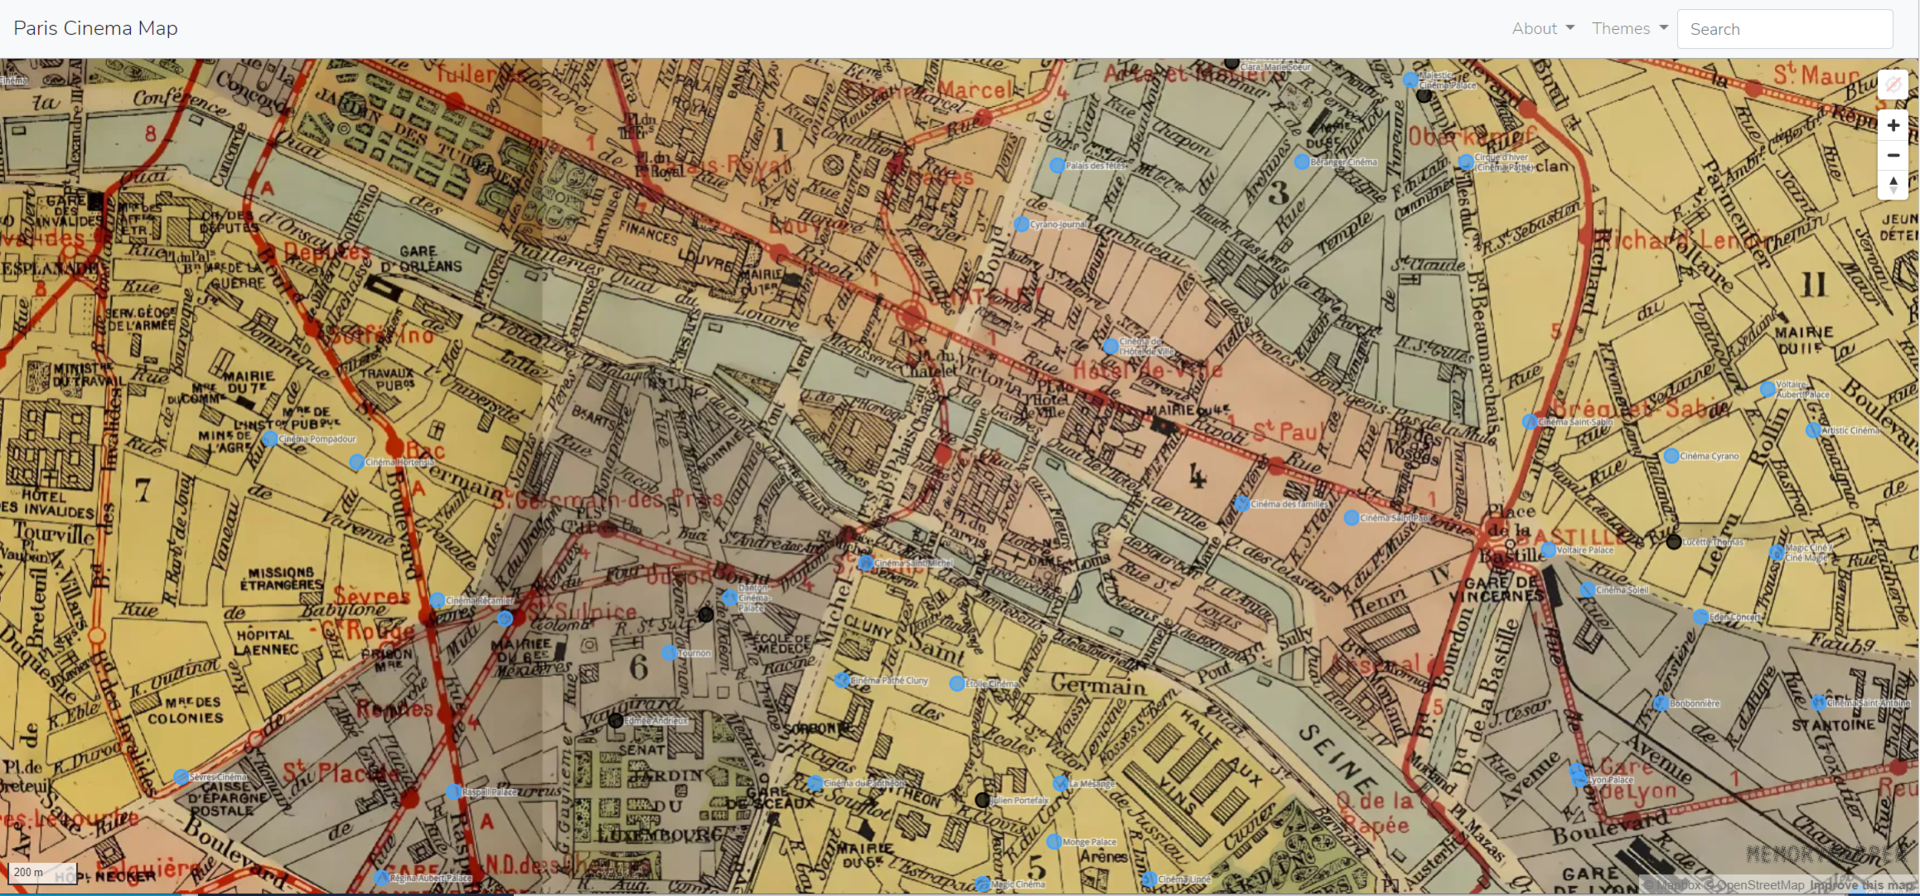 kart med geolokasjoner for kinoer i paris på 1920-tallet